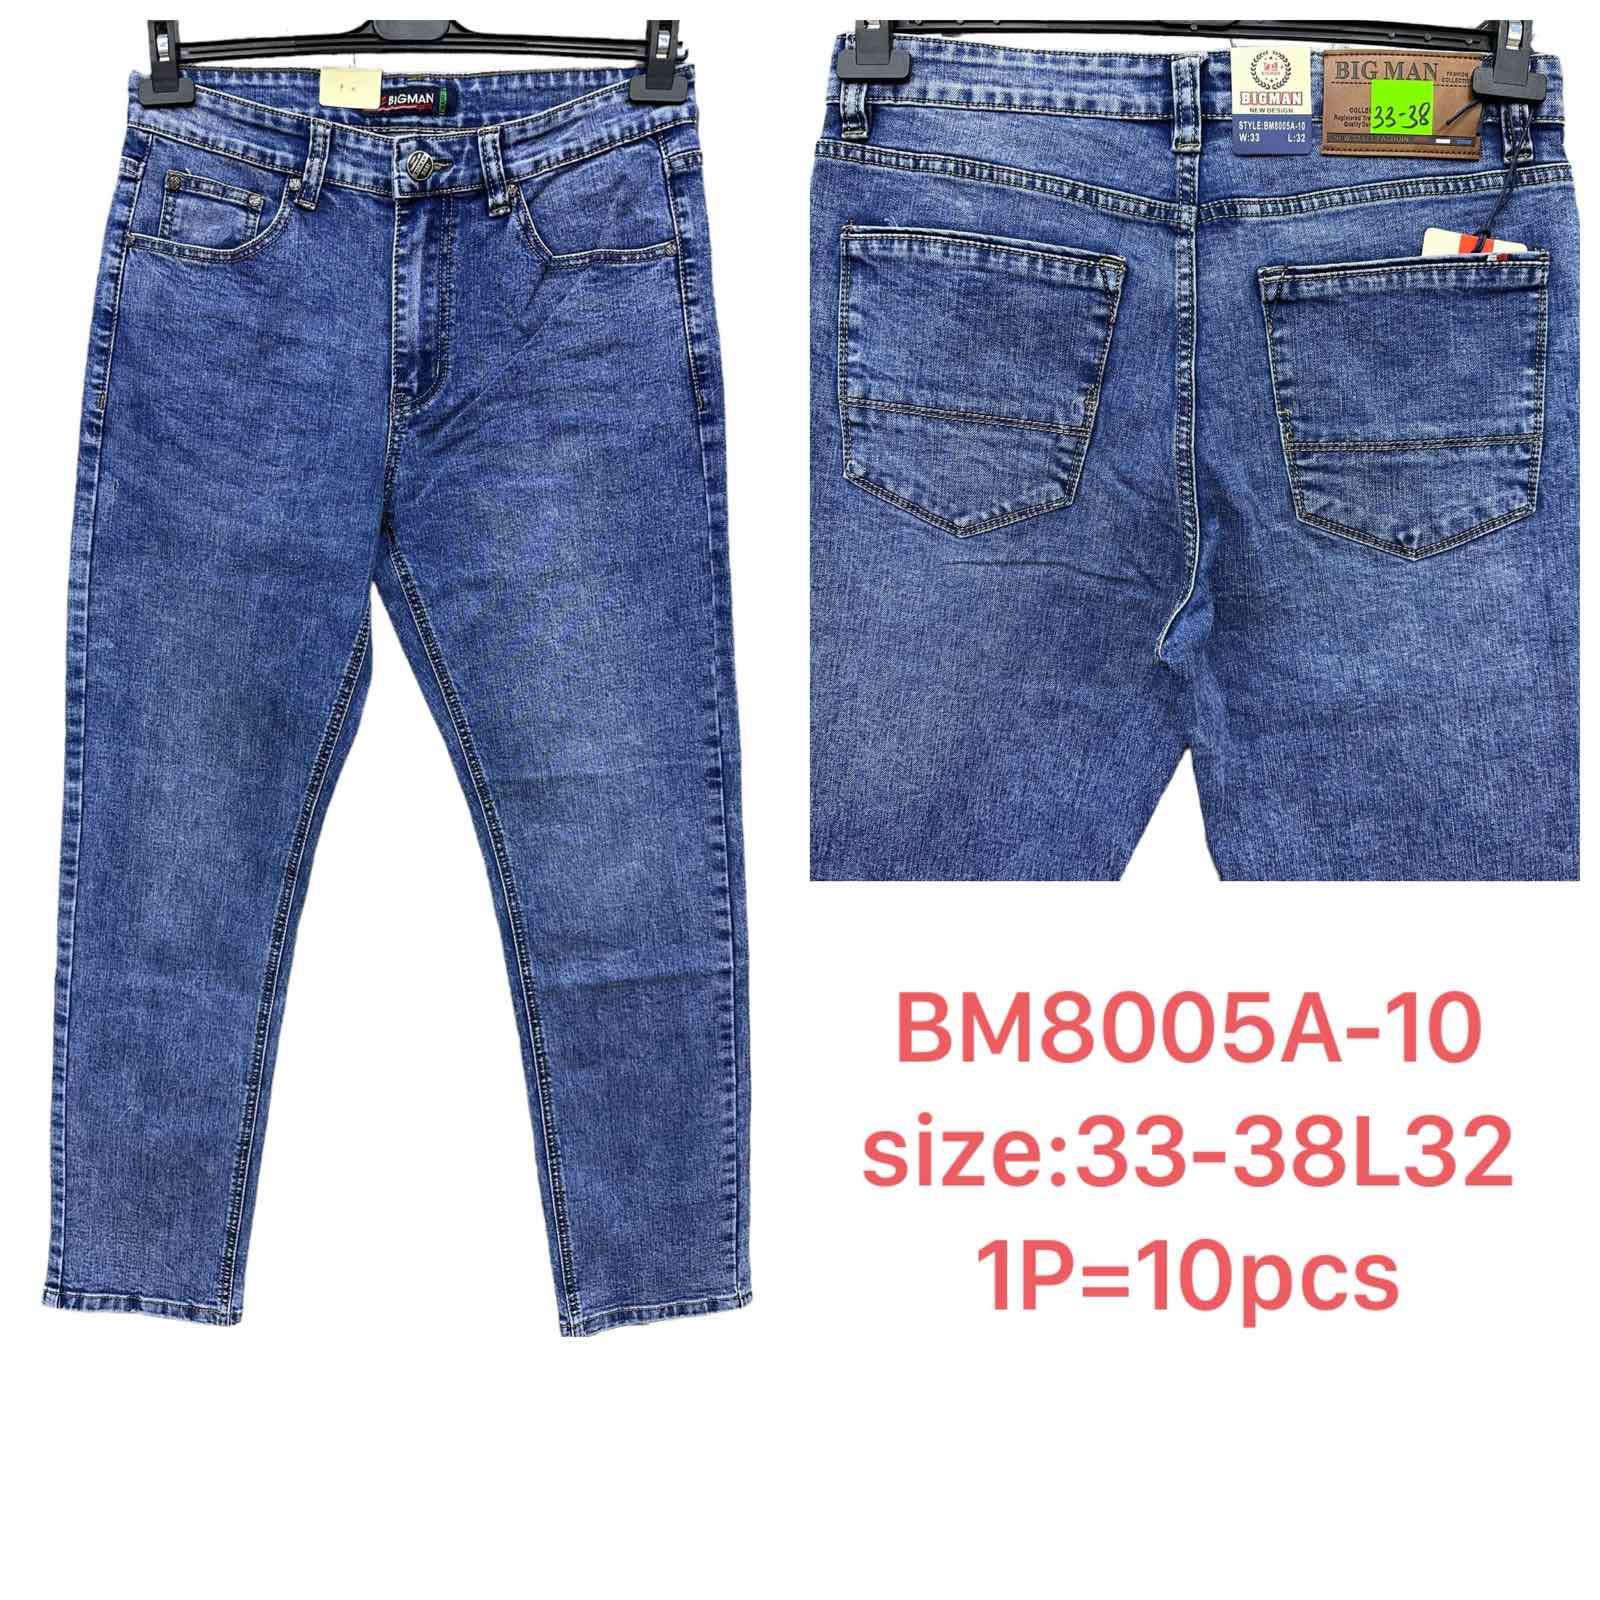 Spodnie meskie jeans  Roz 33-38 L32 Paczka 10szt